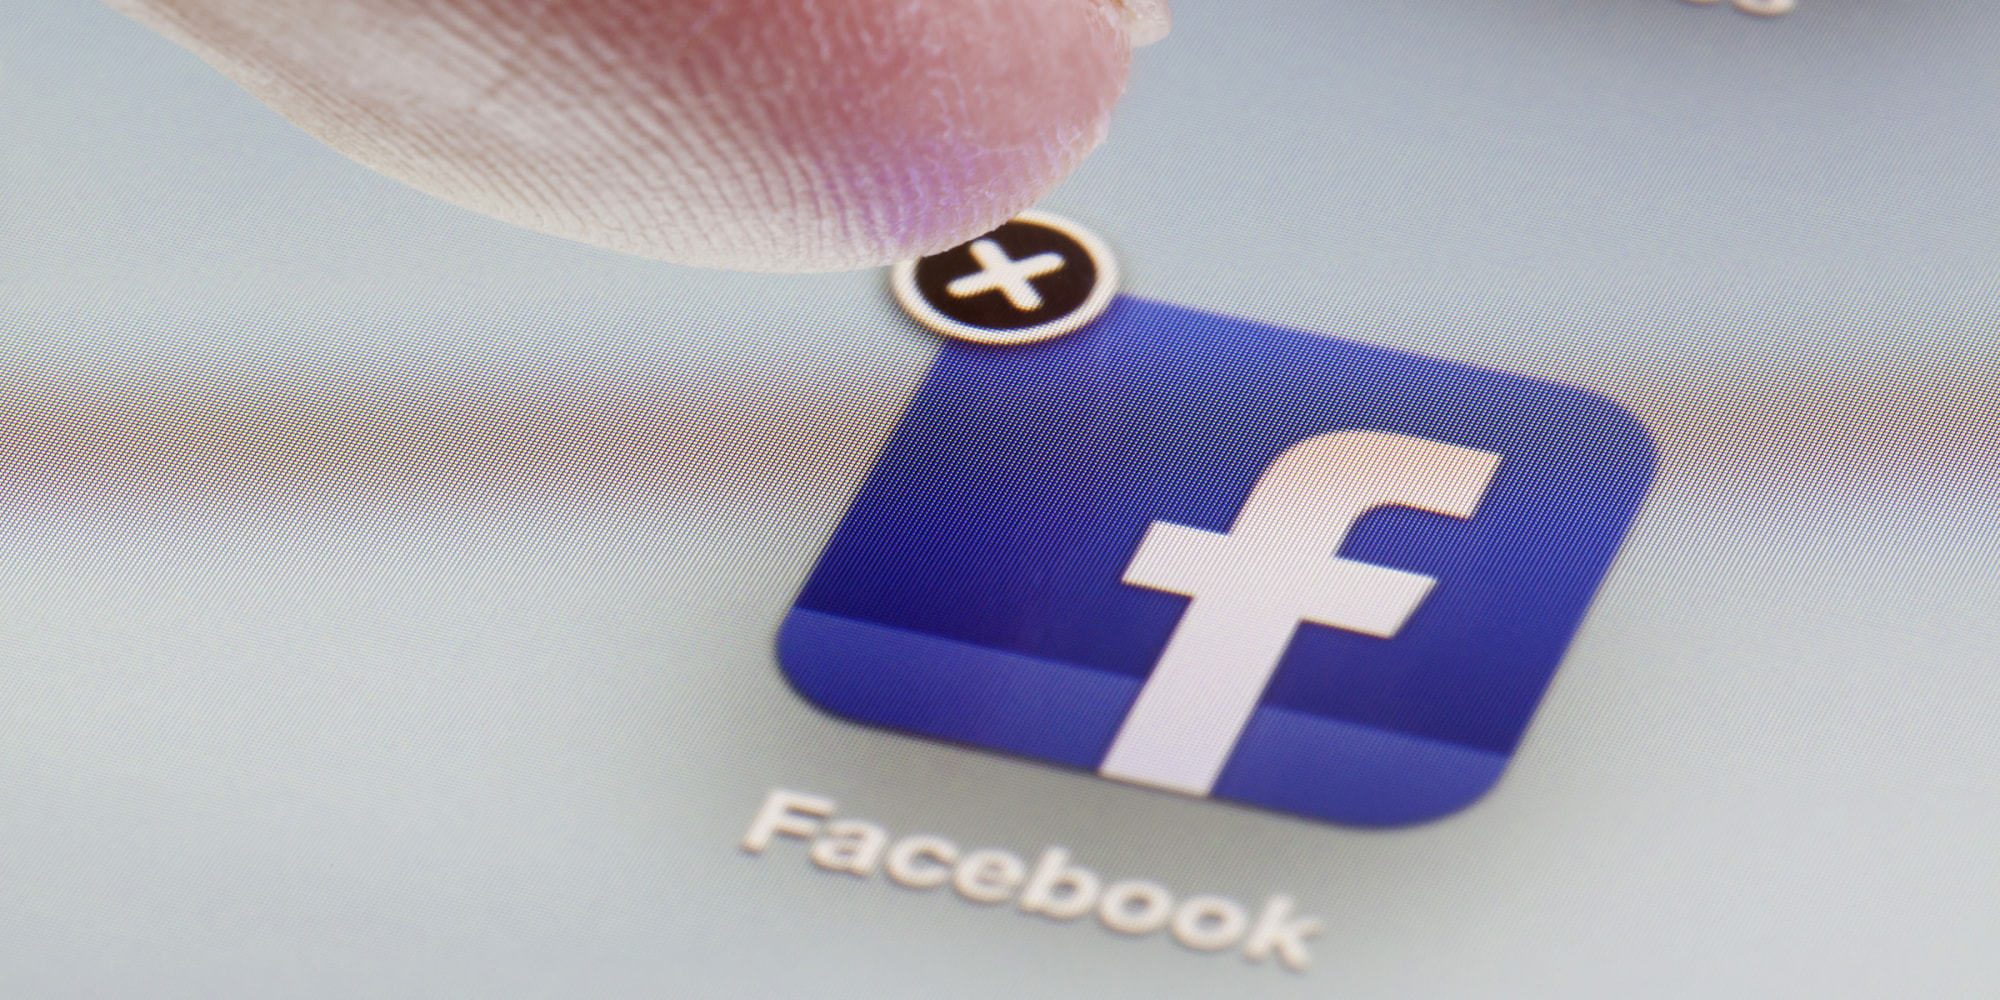 آموزش: چگونه حساب فیس بوک خود را موقت و یا بطور دائم حذف کنیم